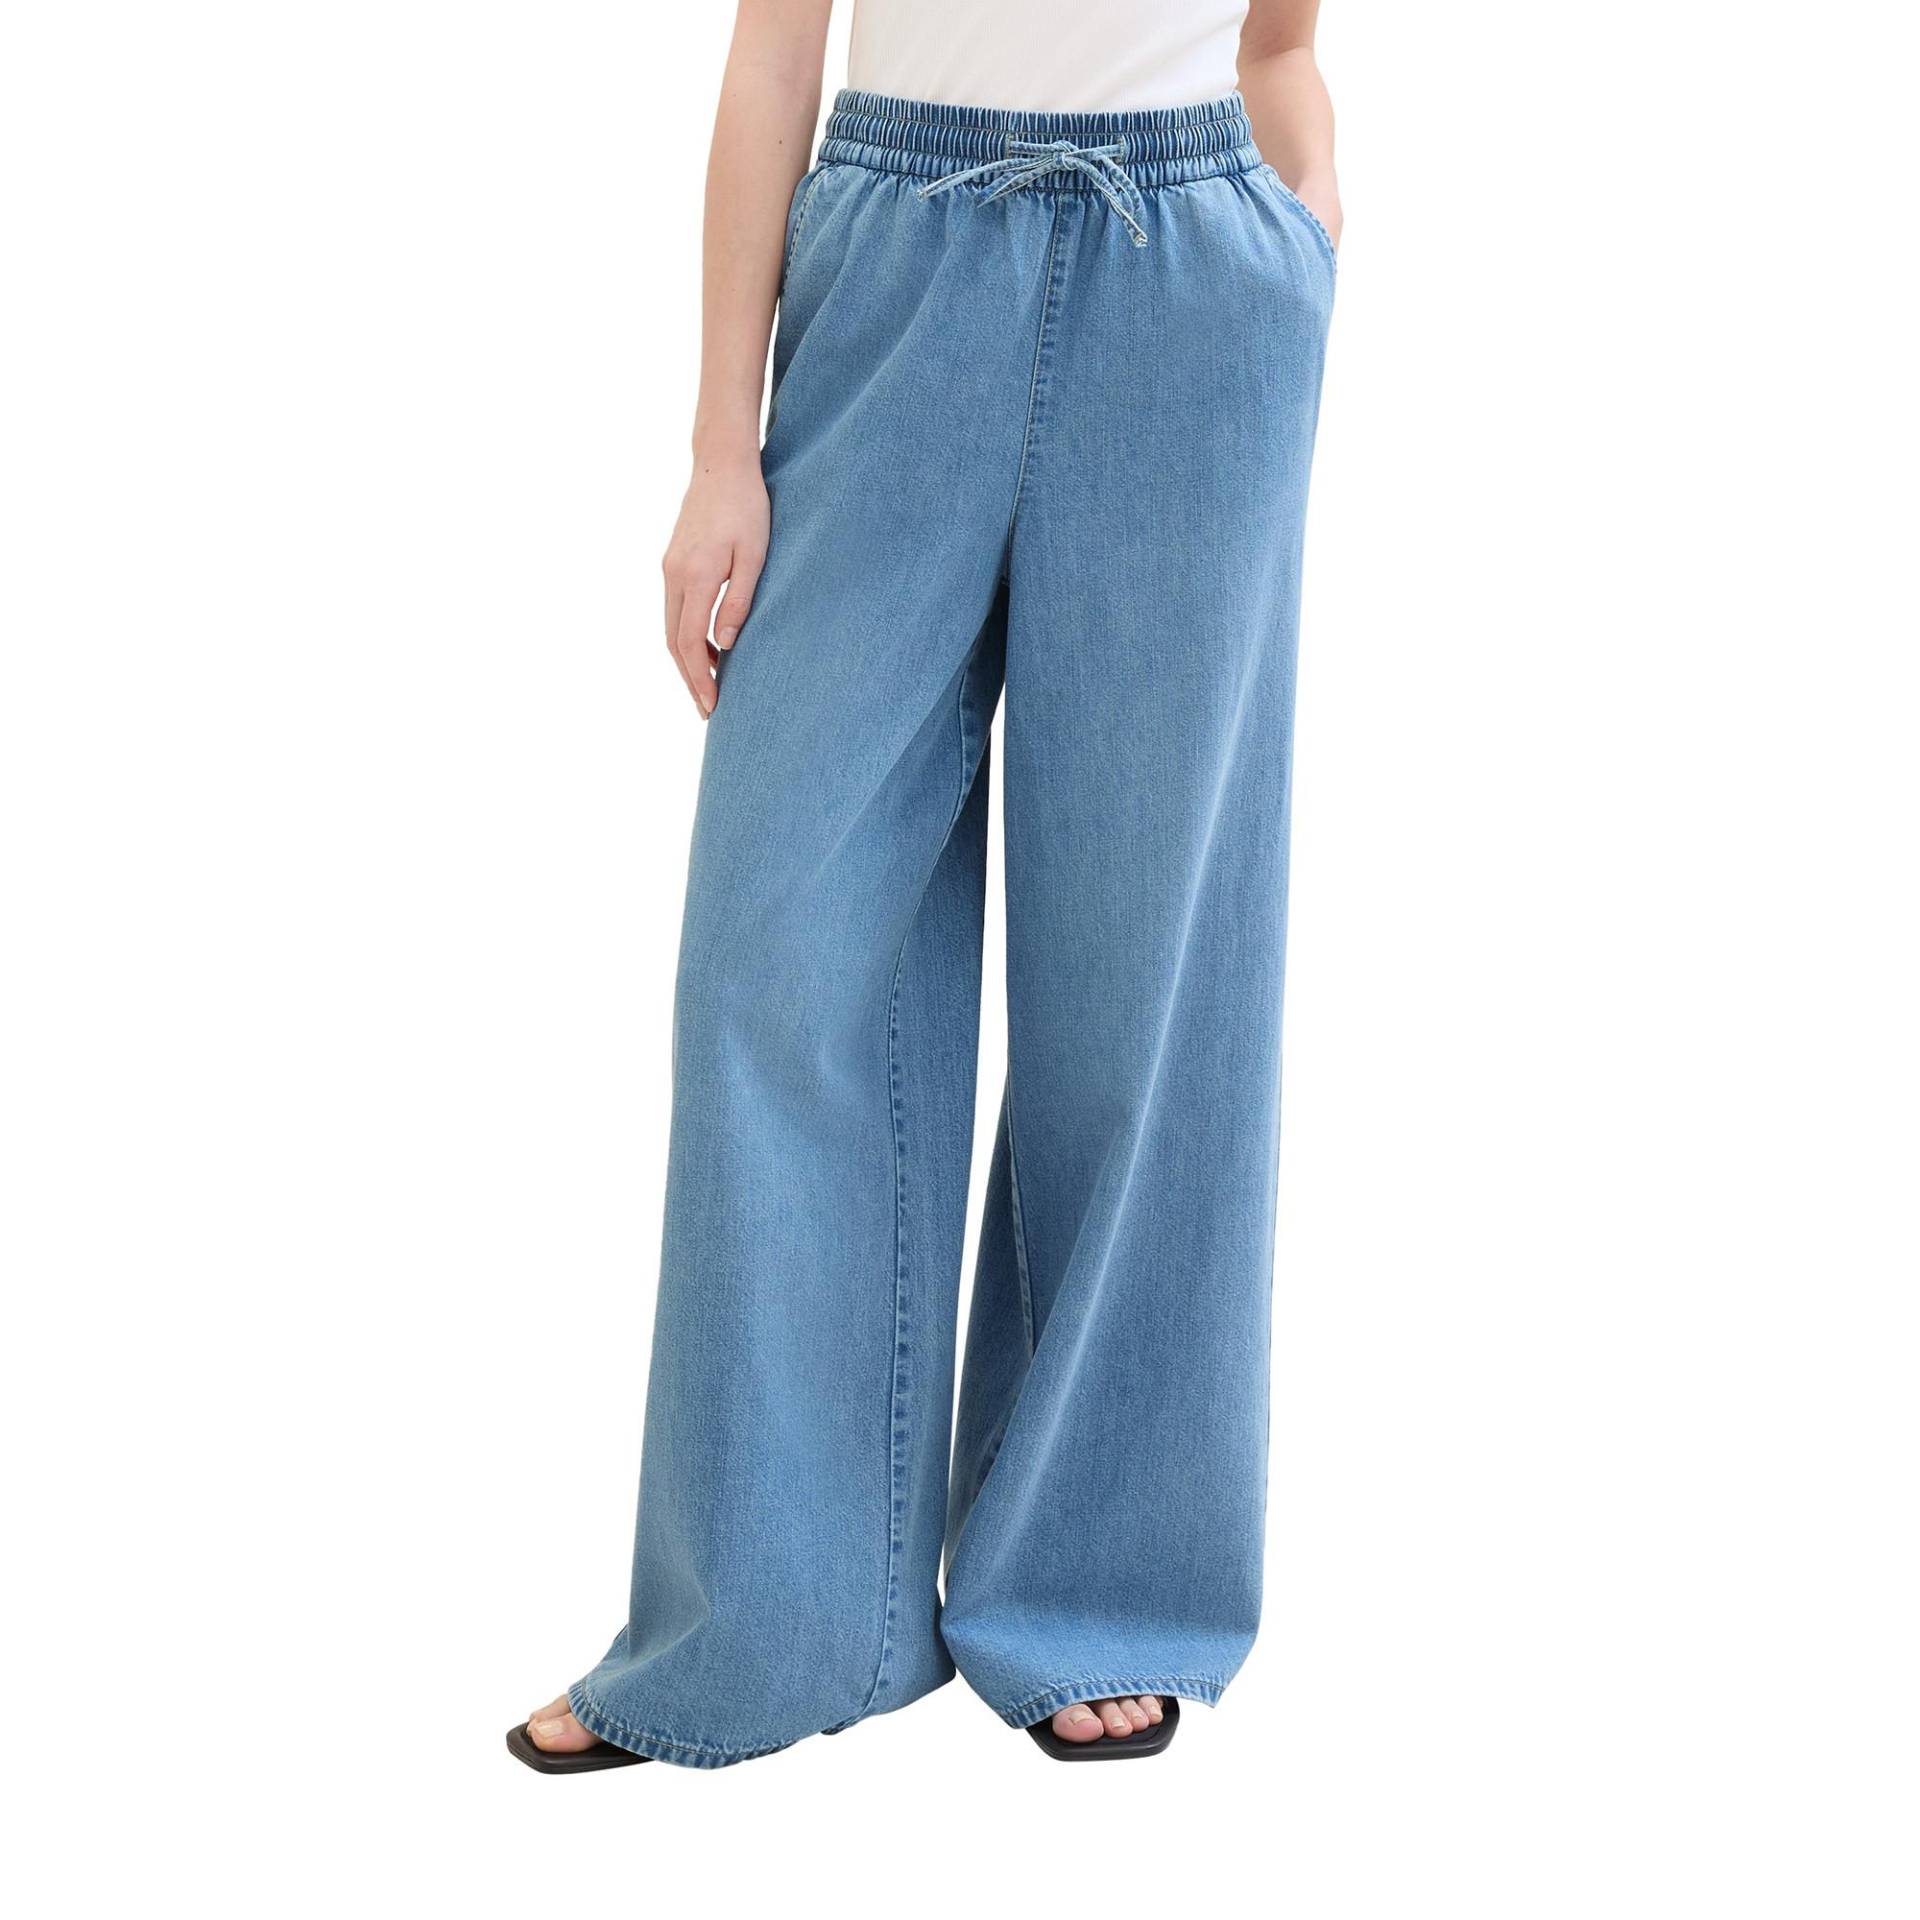 Jeans Damen Blau Denim XL von TOM TAILOR Denim